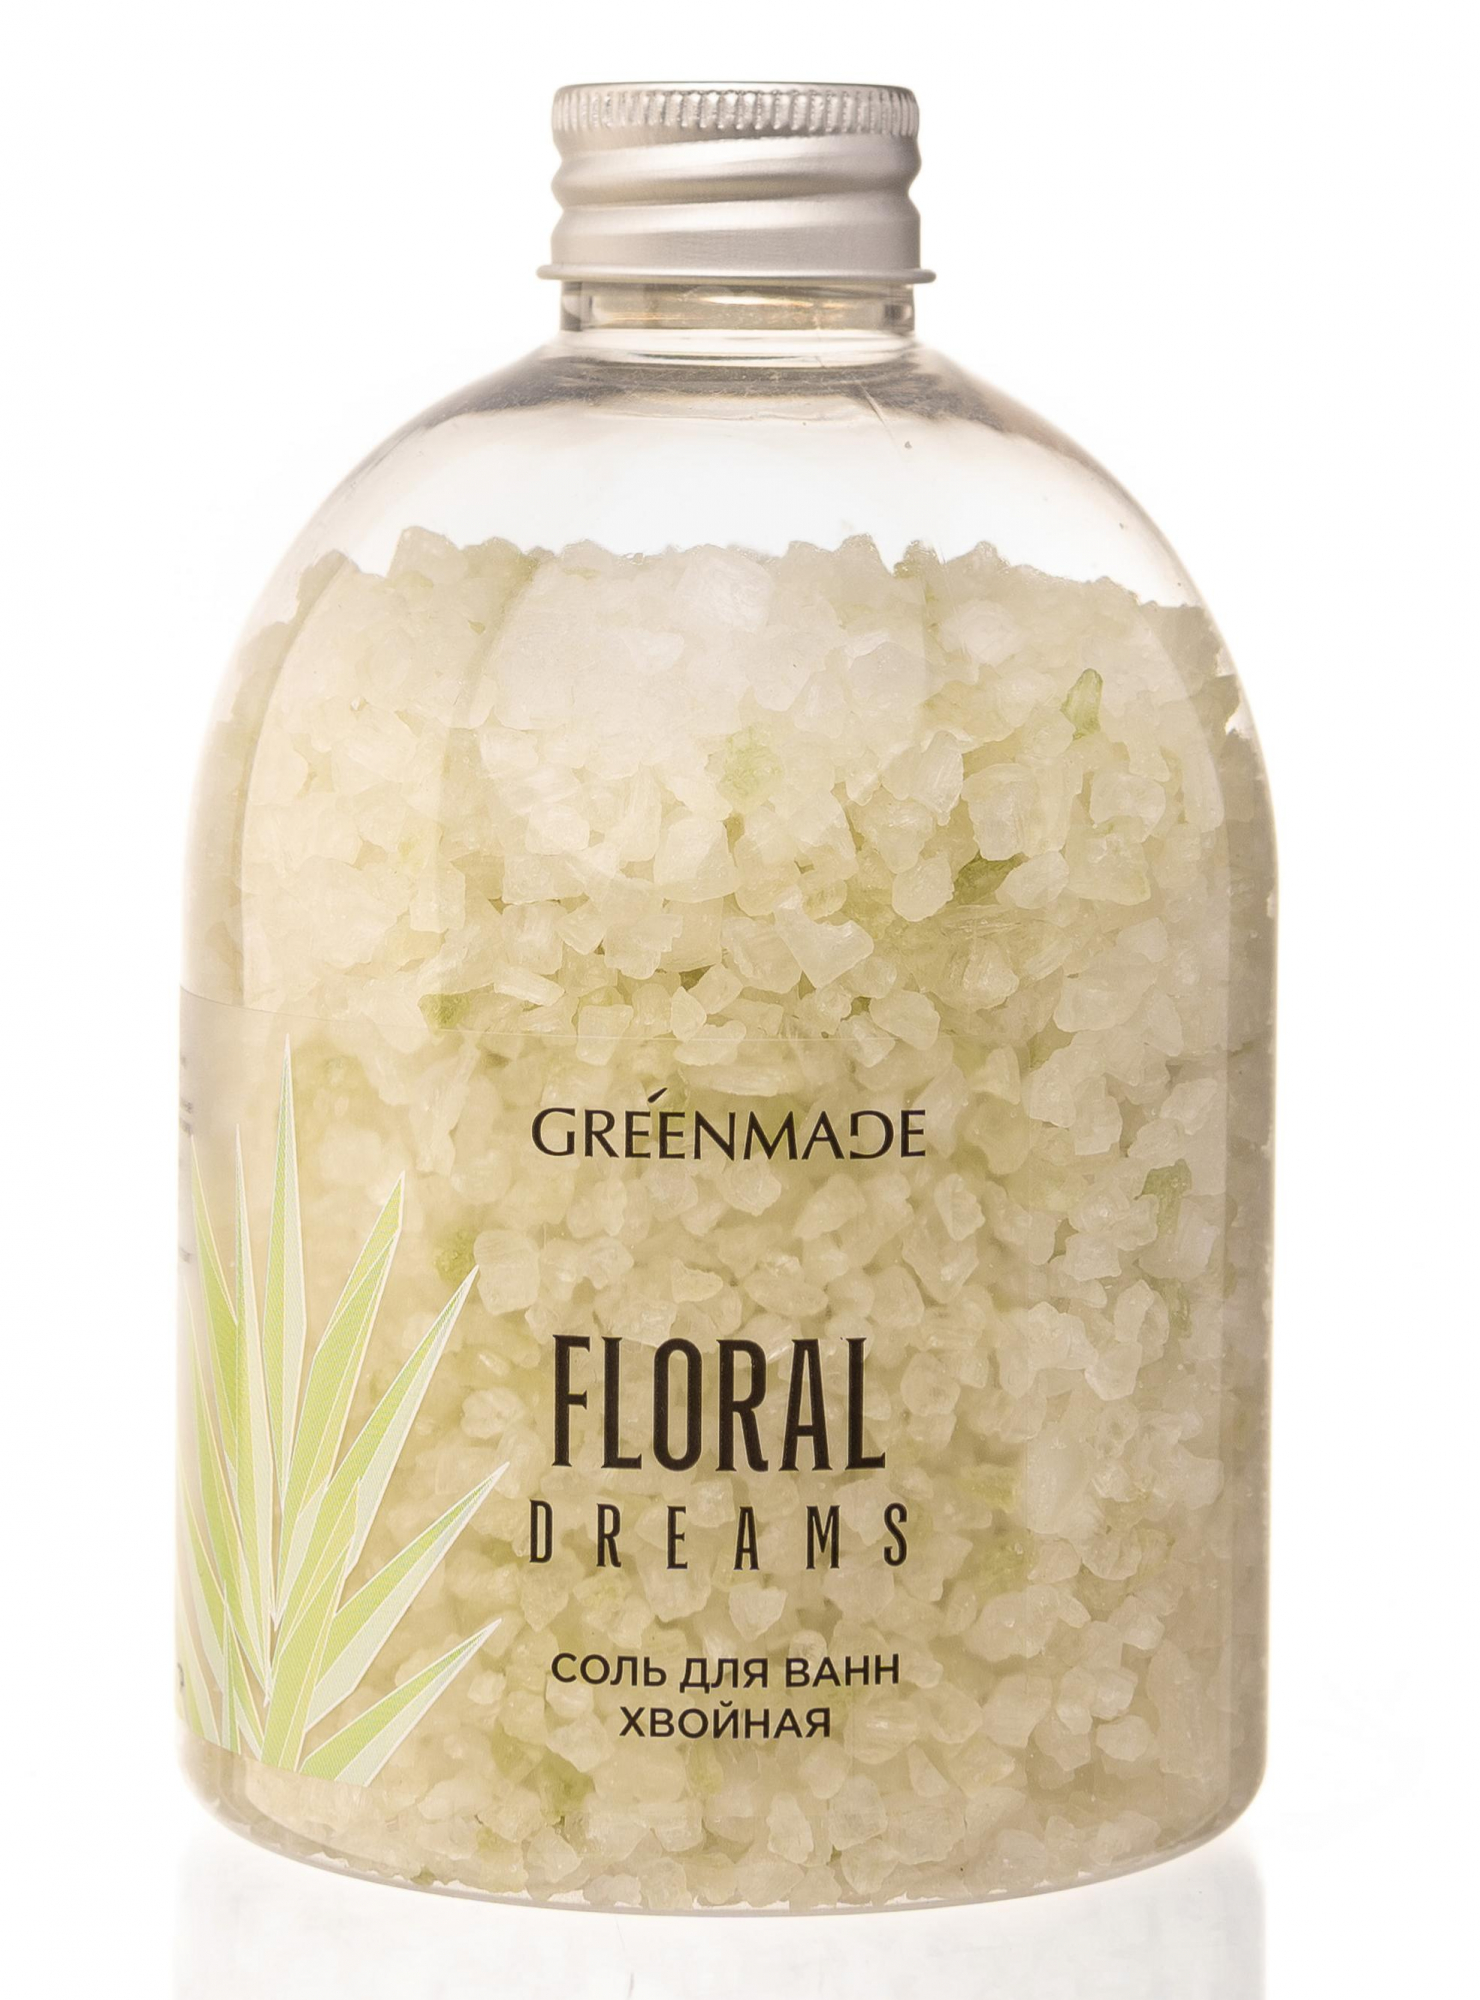 Соль для ванны хвойная Floral dreams,500г купить в онлайн экомаркете